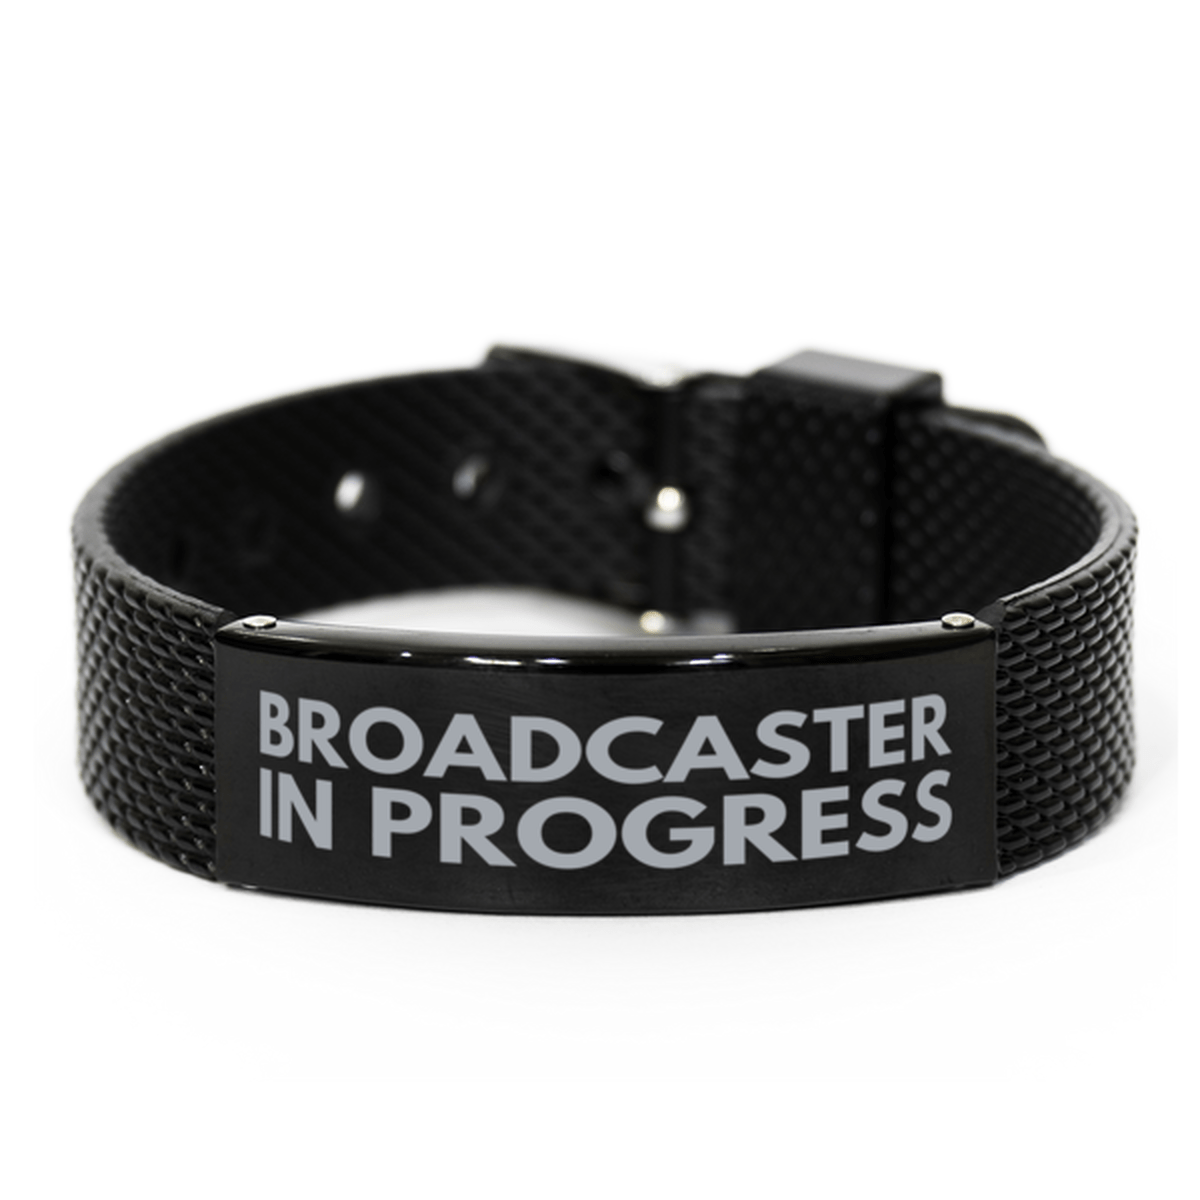 Inspirational Broadcaster Black Shark Mesh Bracelet, Broadcaster In Progress, Best Graduation Gifts for Students